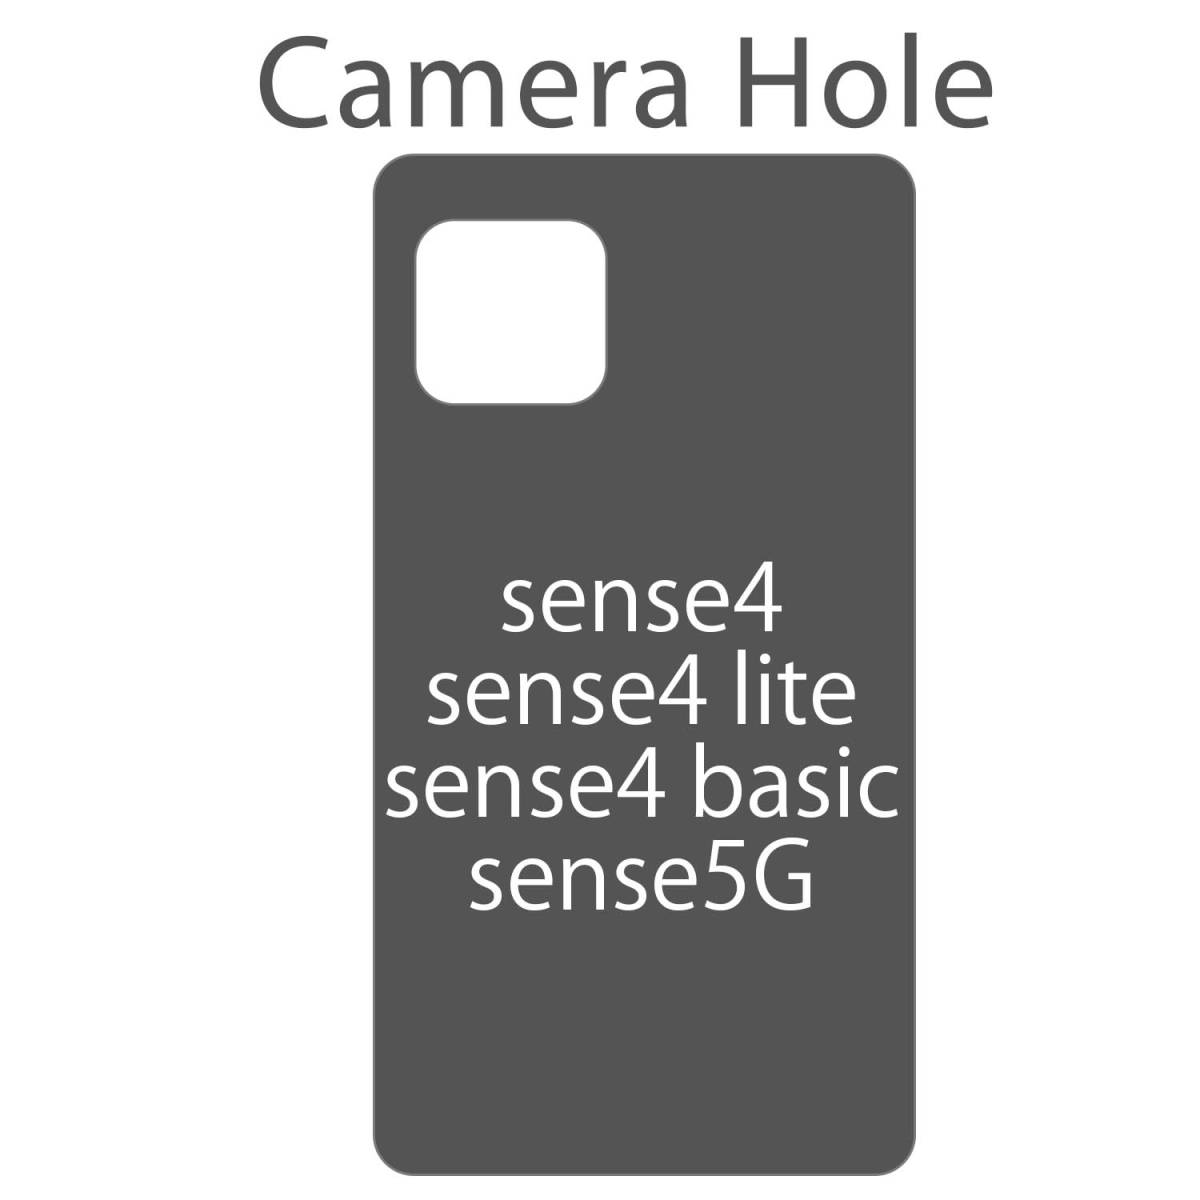 AQUOS Sense4 ケース 手帳型 かわいい ピンク 桃 SH41A Sense5G カバー Sense4lite sense4basic 鏡付 ストラップ チェック柄 送料無料 安い_画像3